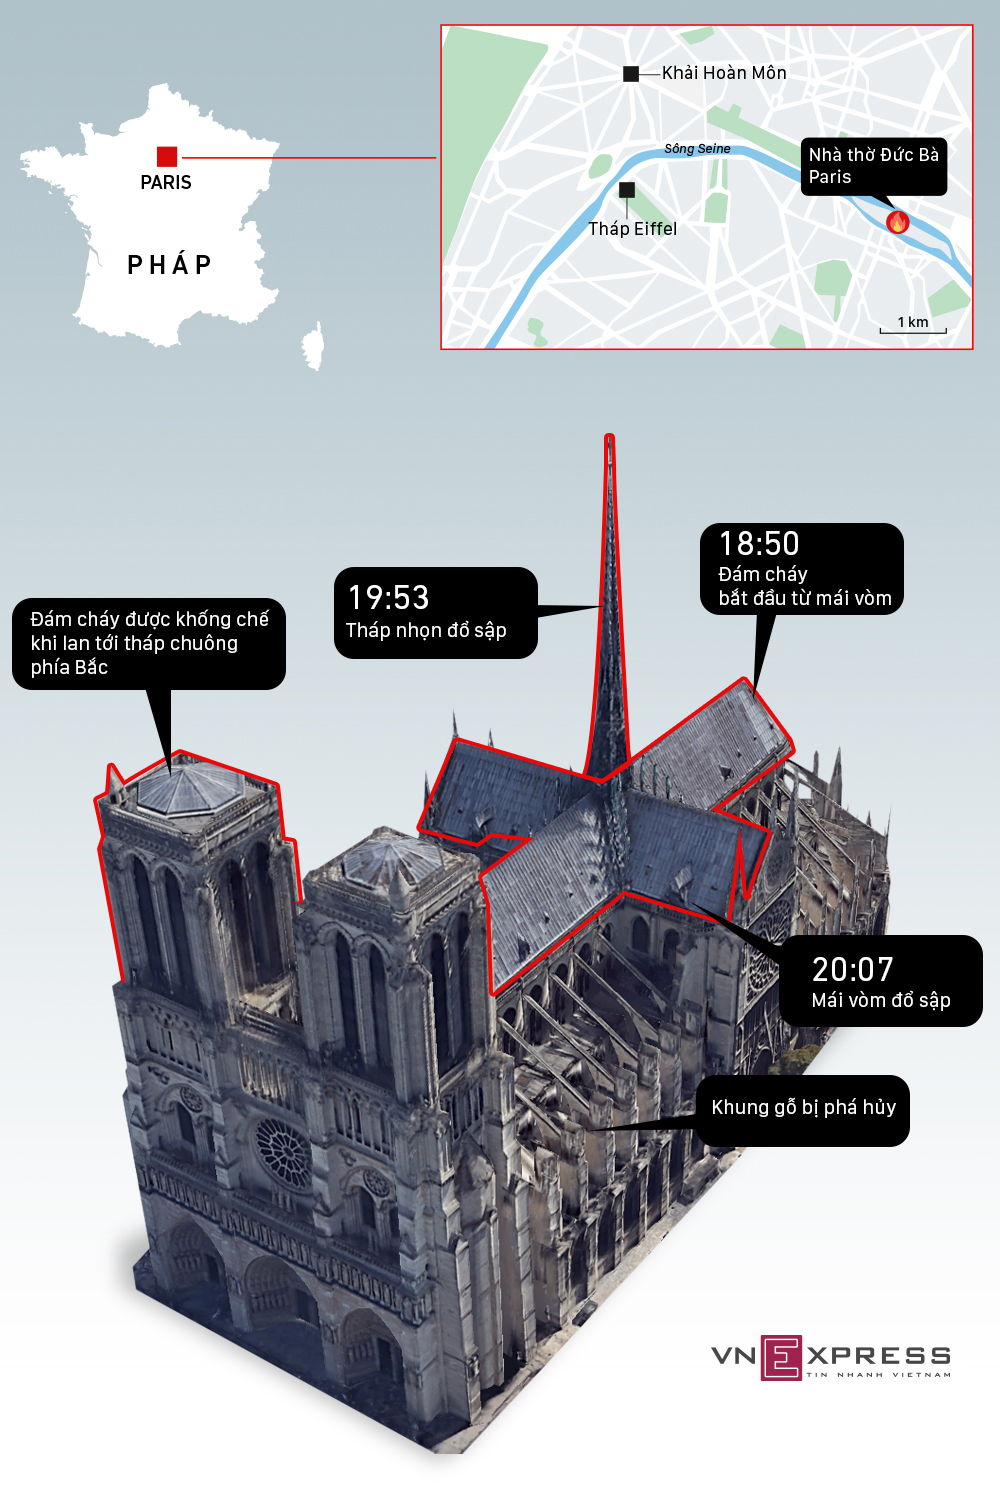 Đại văn hào Victor Hugo đã tiên tri trước về vụ cháy ở Nhà thờ Đức Bà Paris?